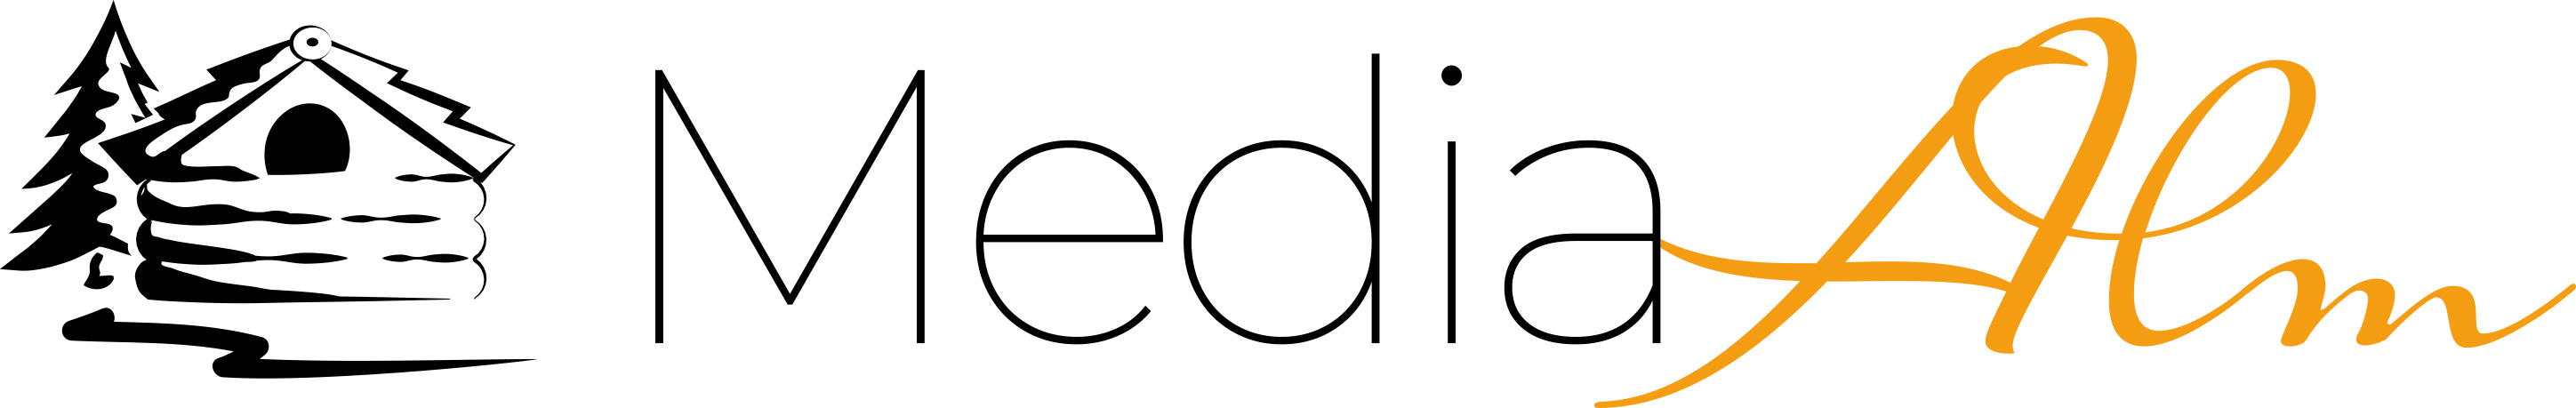 Media Alm Logo 2020 Final Pfade 4c